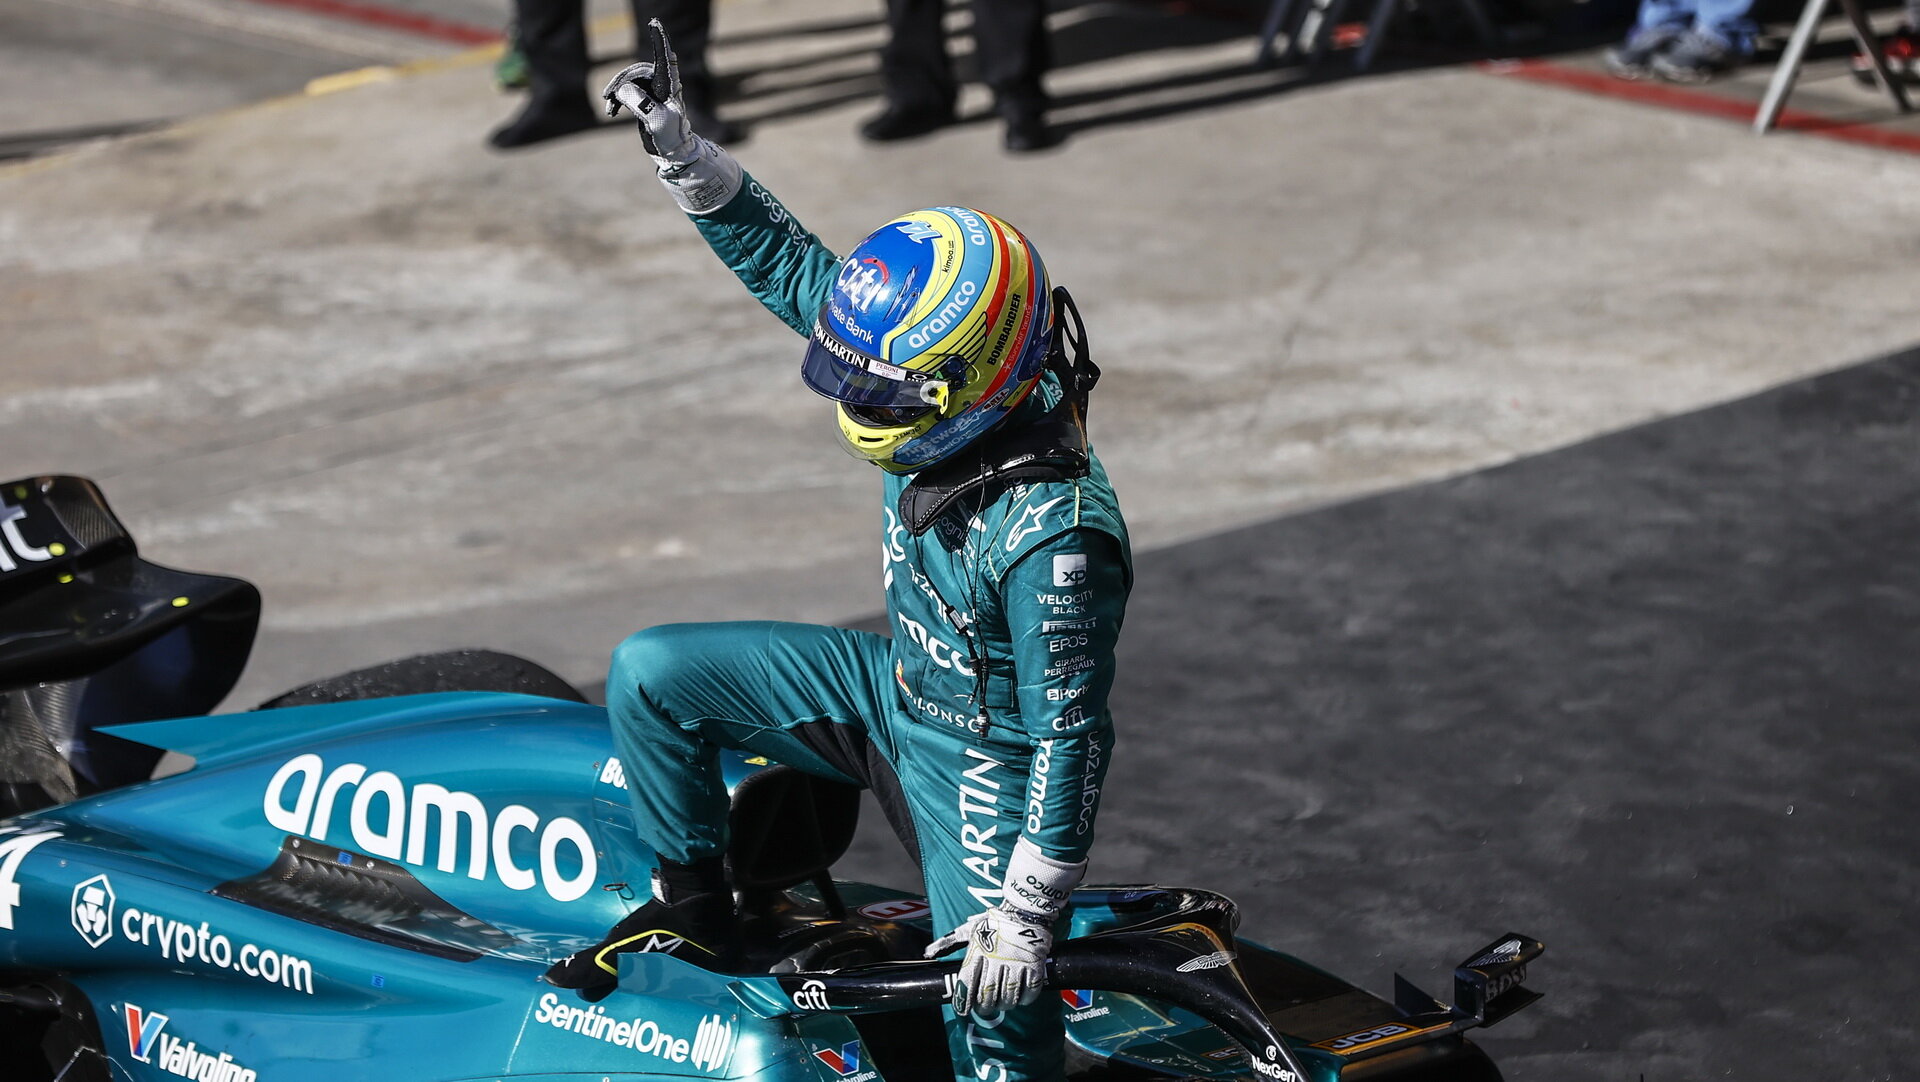 Fernando Alonso po úspěšném cíly v závodě v Brazílii